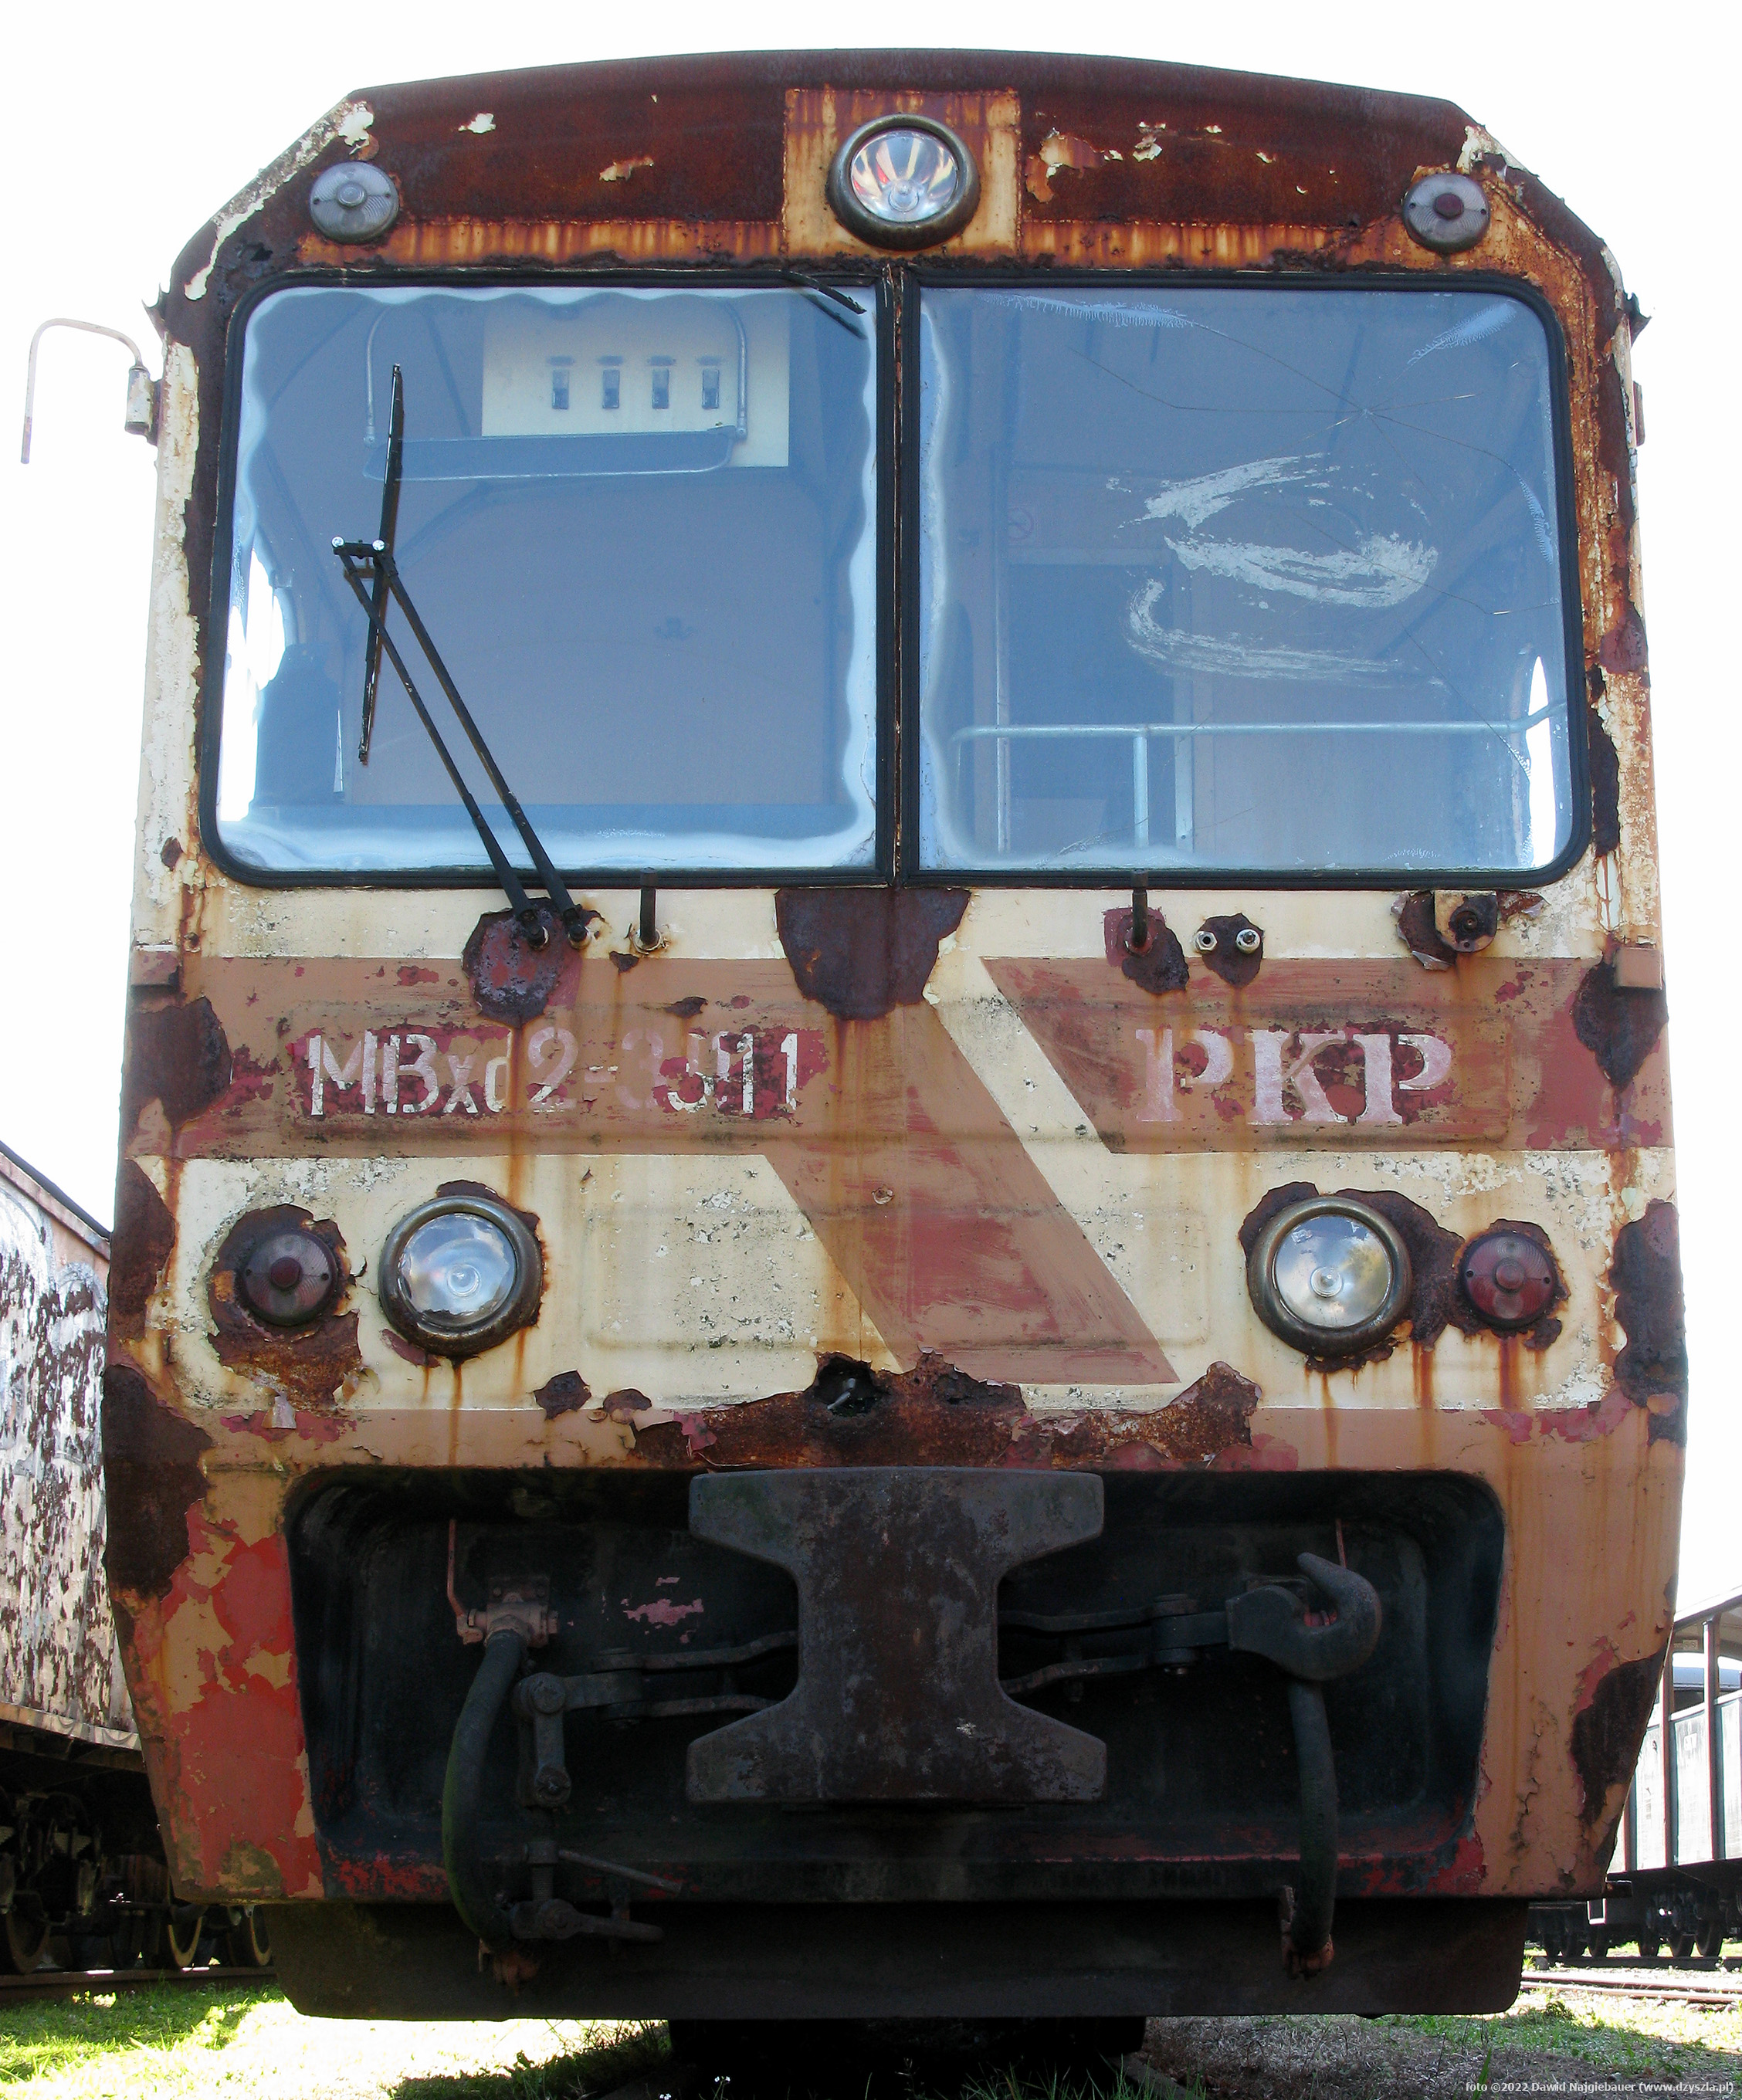 MBxd2 - 311